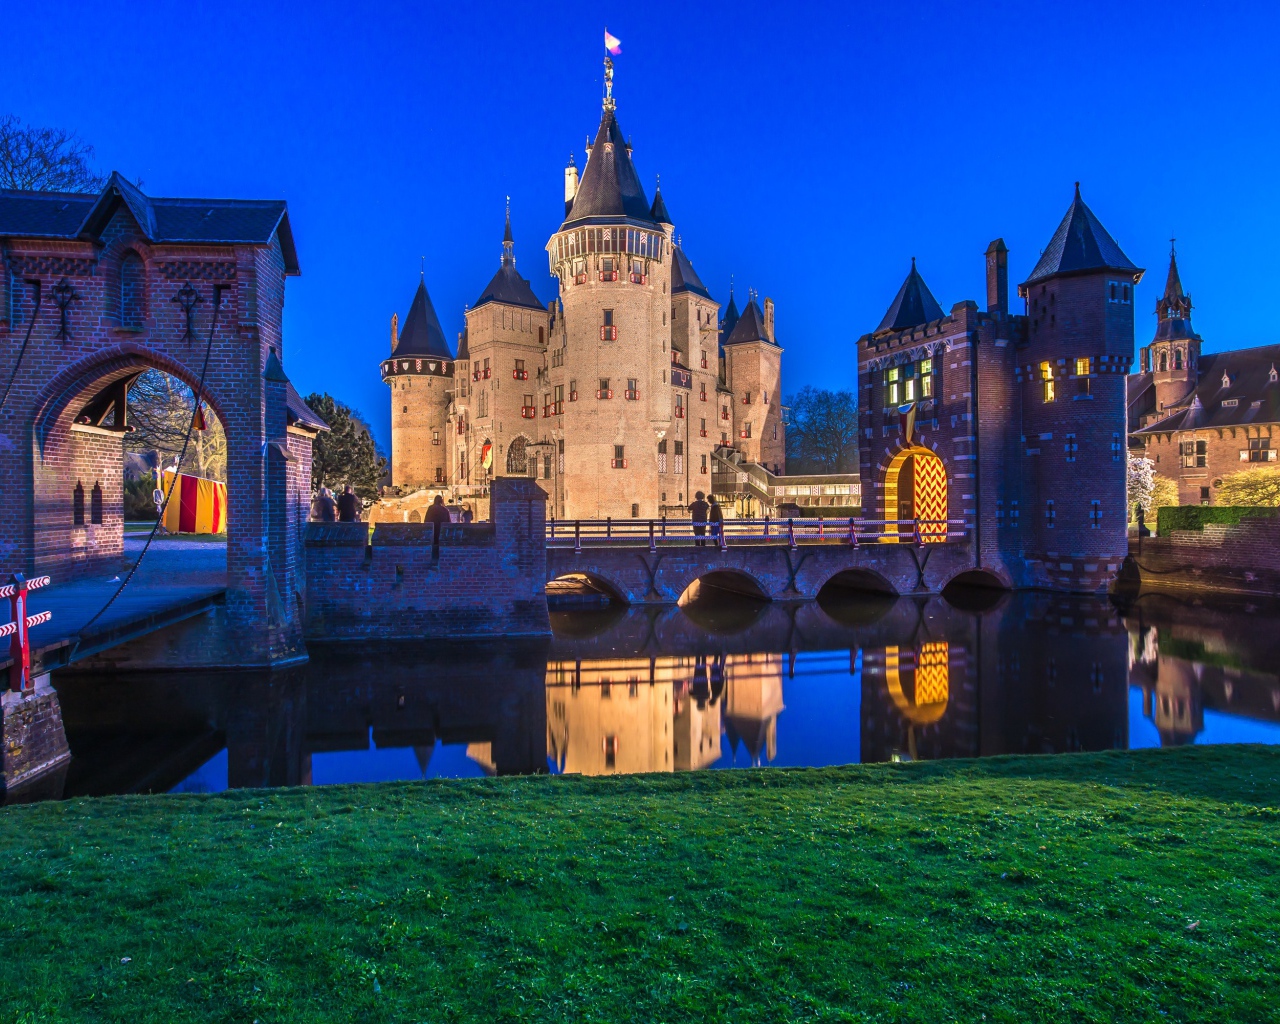 Ancient castle De Haar in the evening, Netherlands